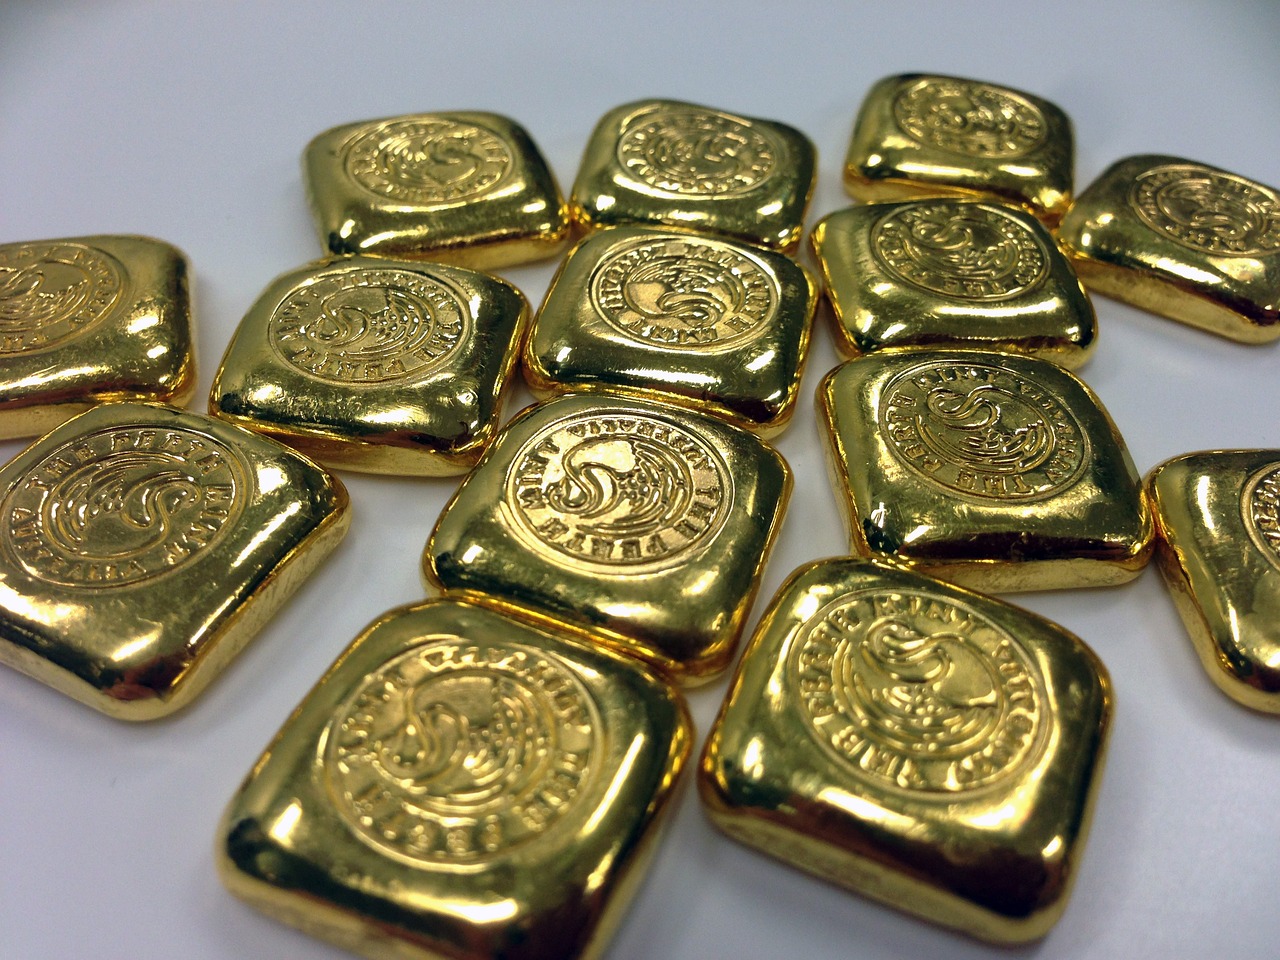 Gran parte del aumento de la demanda de oro está impulsado por los bancos centrales. Foto: Pixabay.